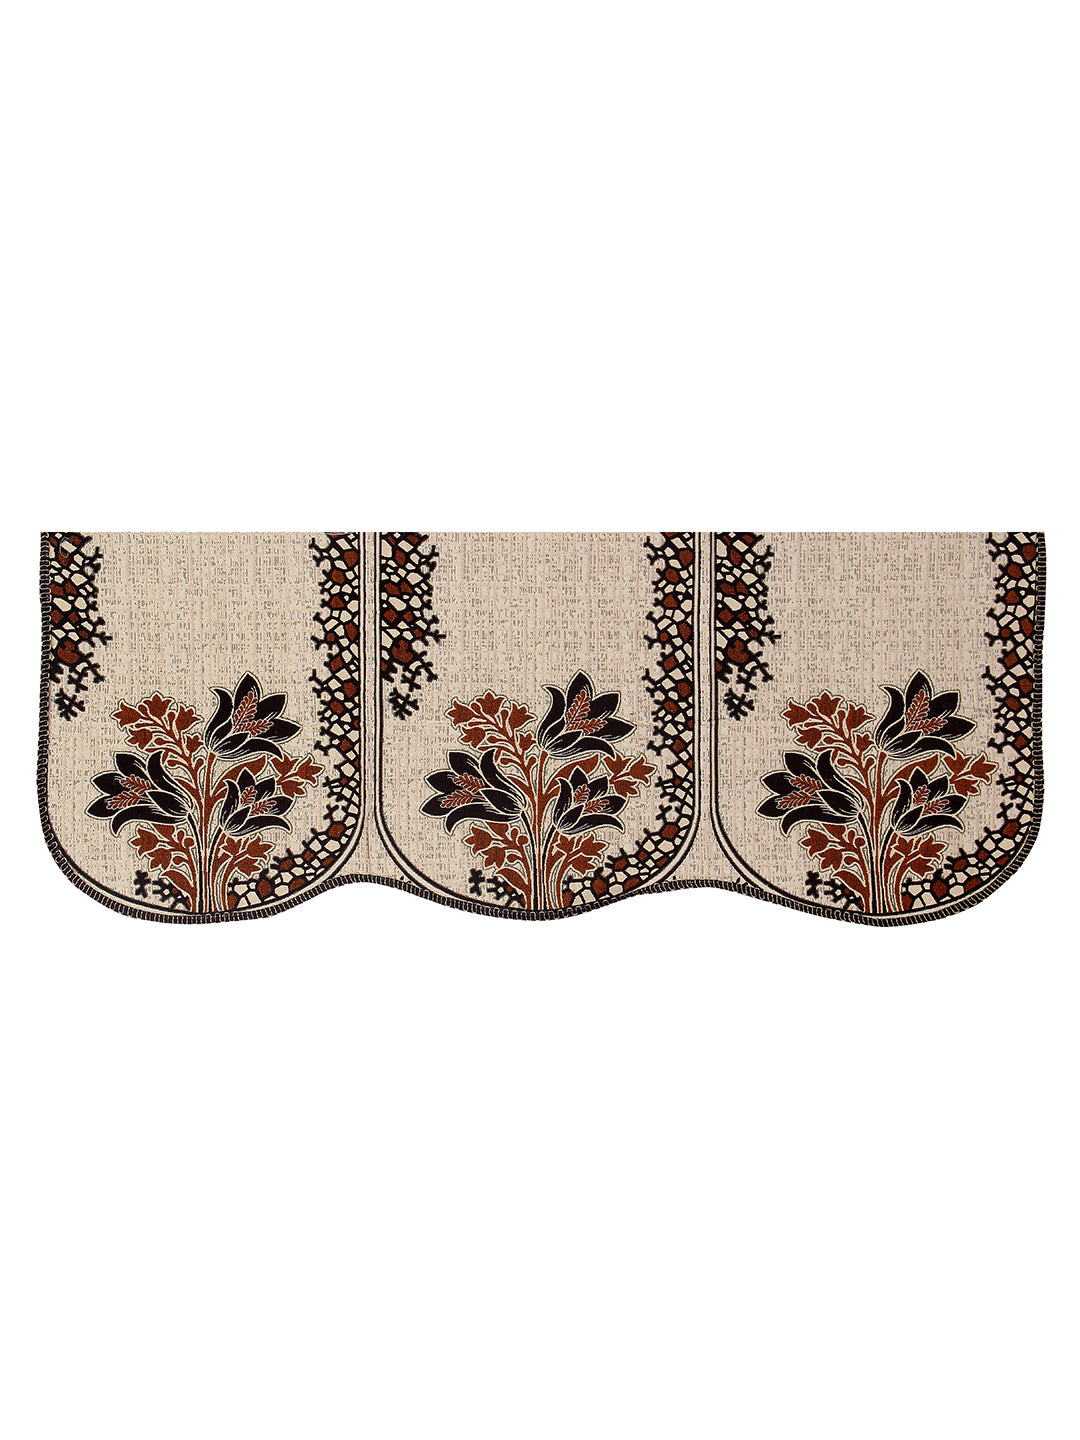 Floral Design 5 Seater Sofa Cover Set , (6 Pieces) - Cream